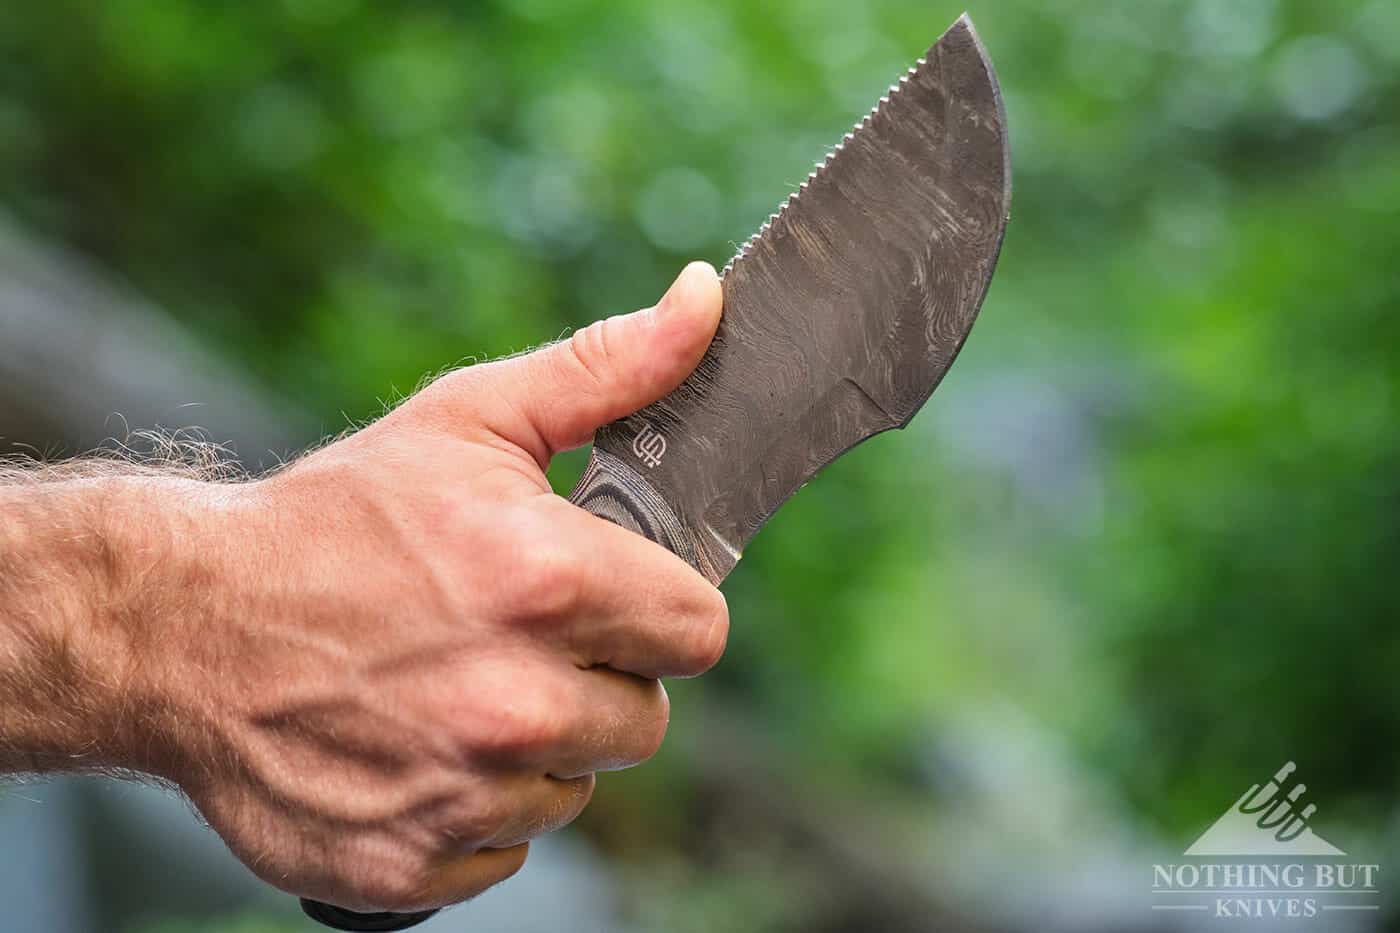 Forseti Boone Damascus Steel Skinner Knife Review 